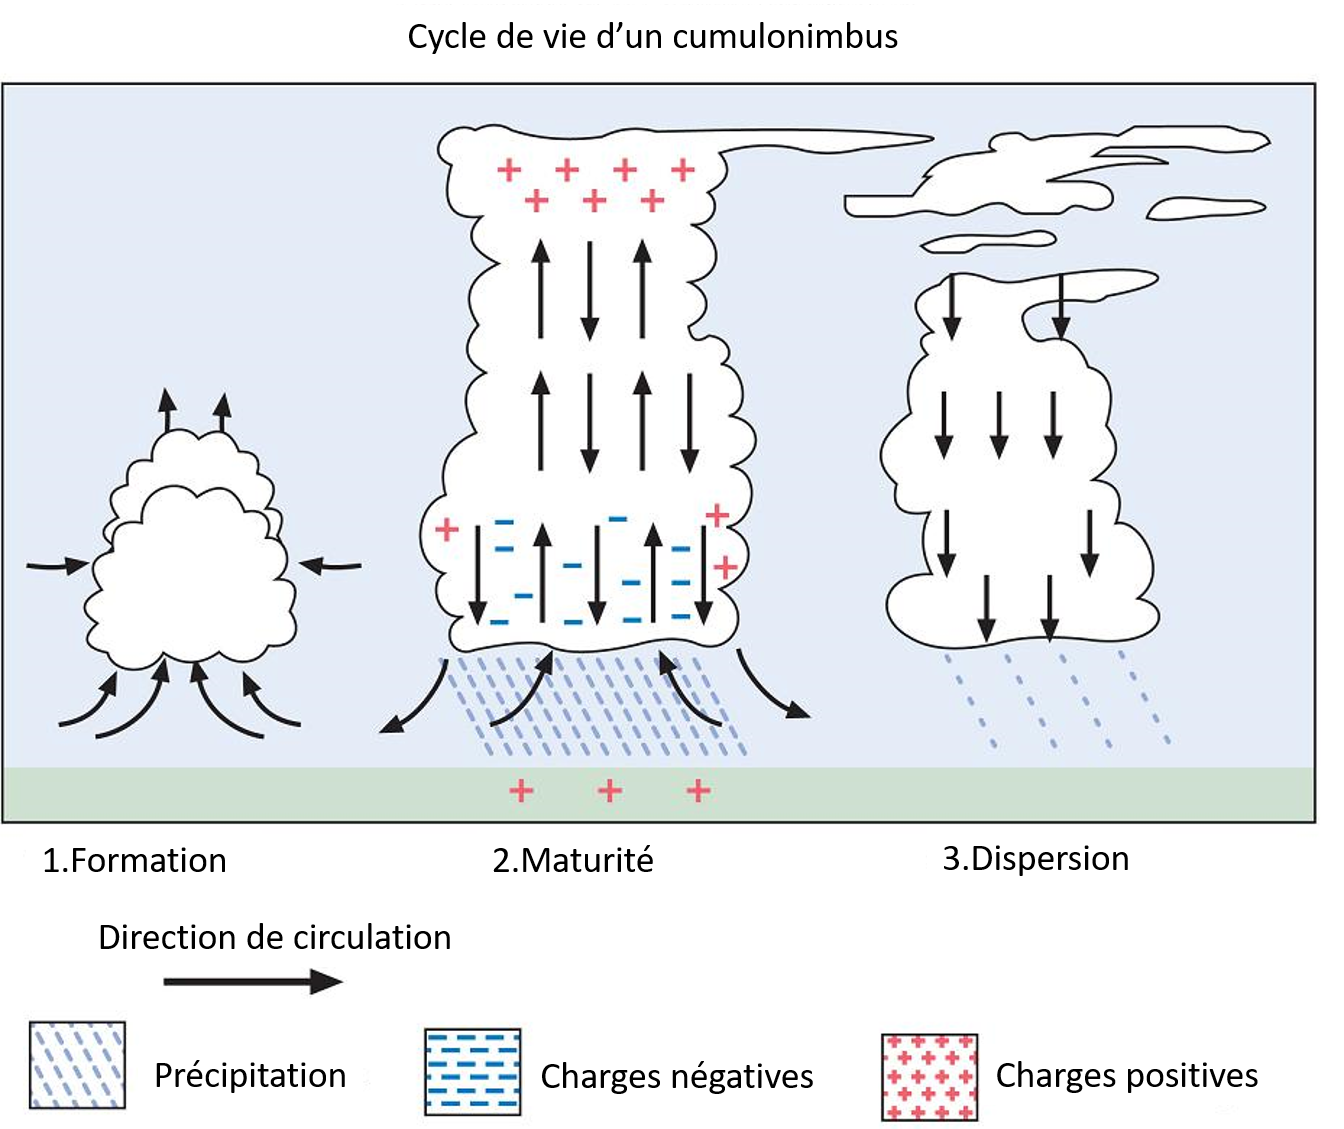 Cycle de vie d’un cumulonimbus en trois phases